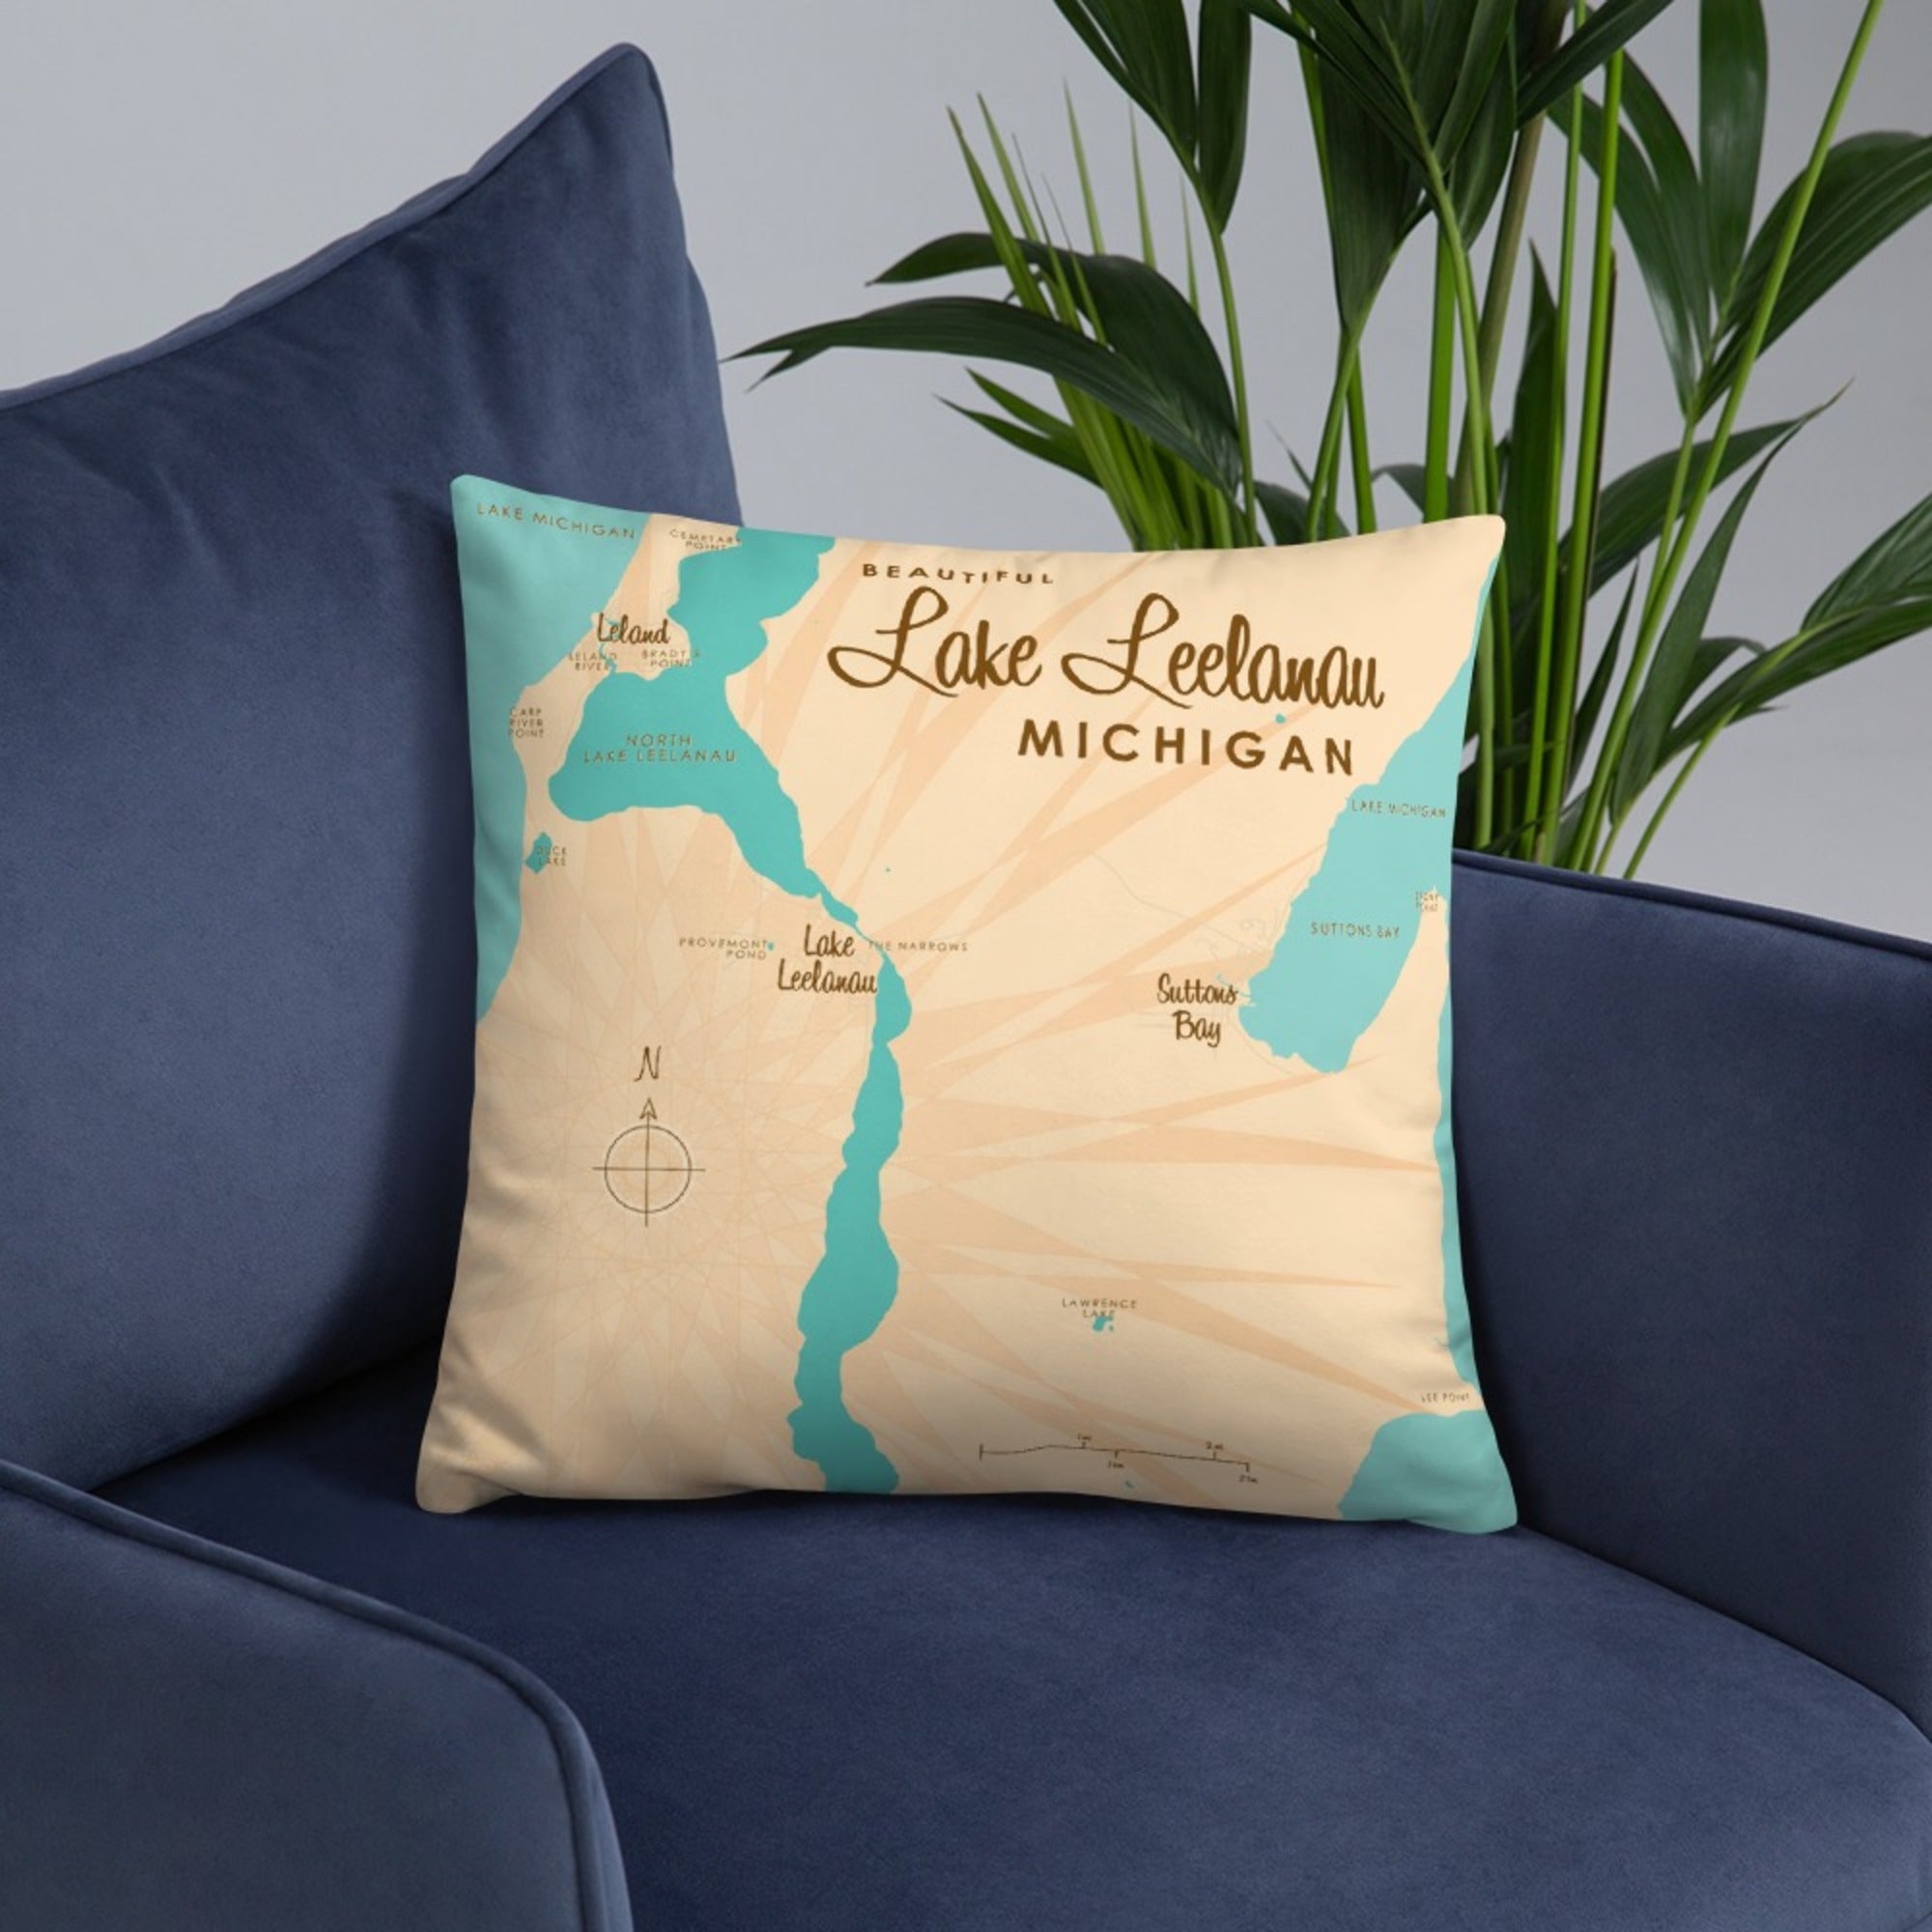 Lake Leelanau Michigan Pillow